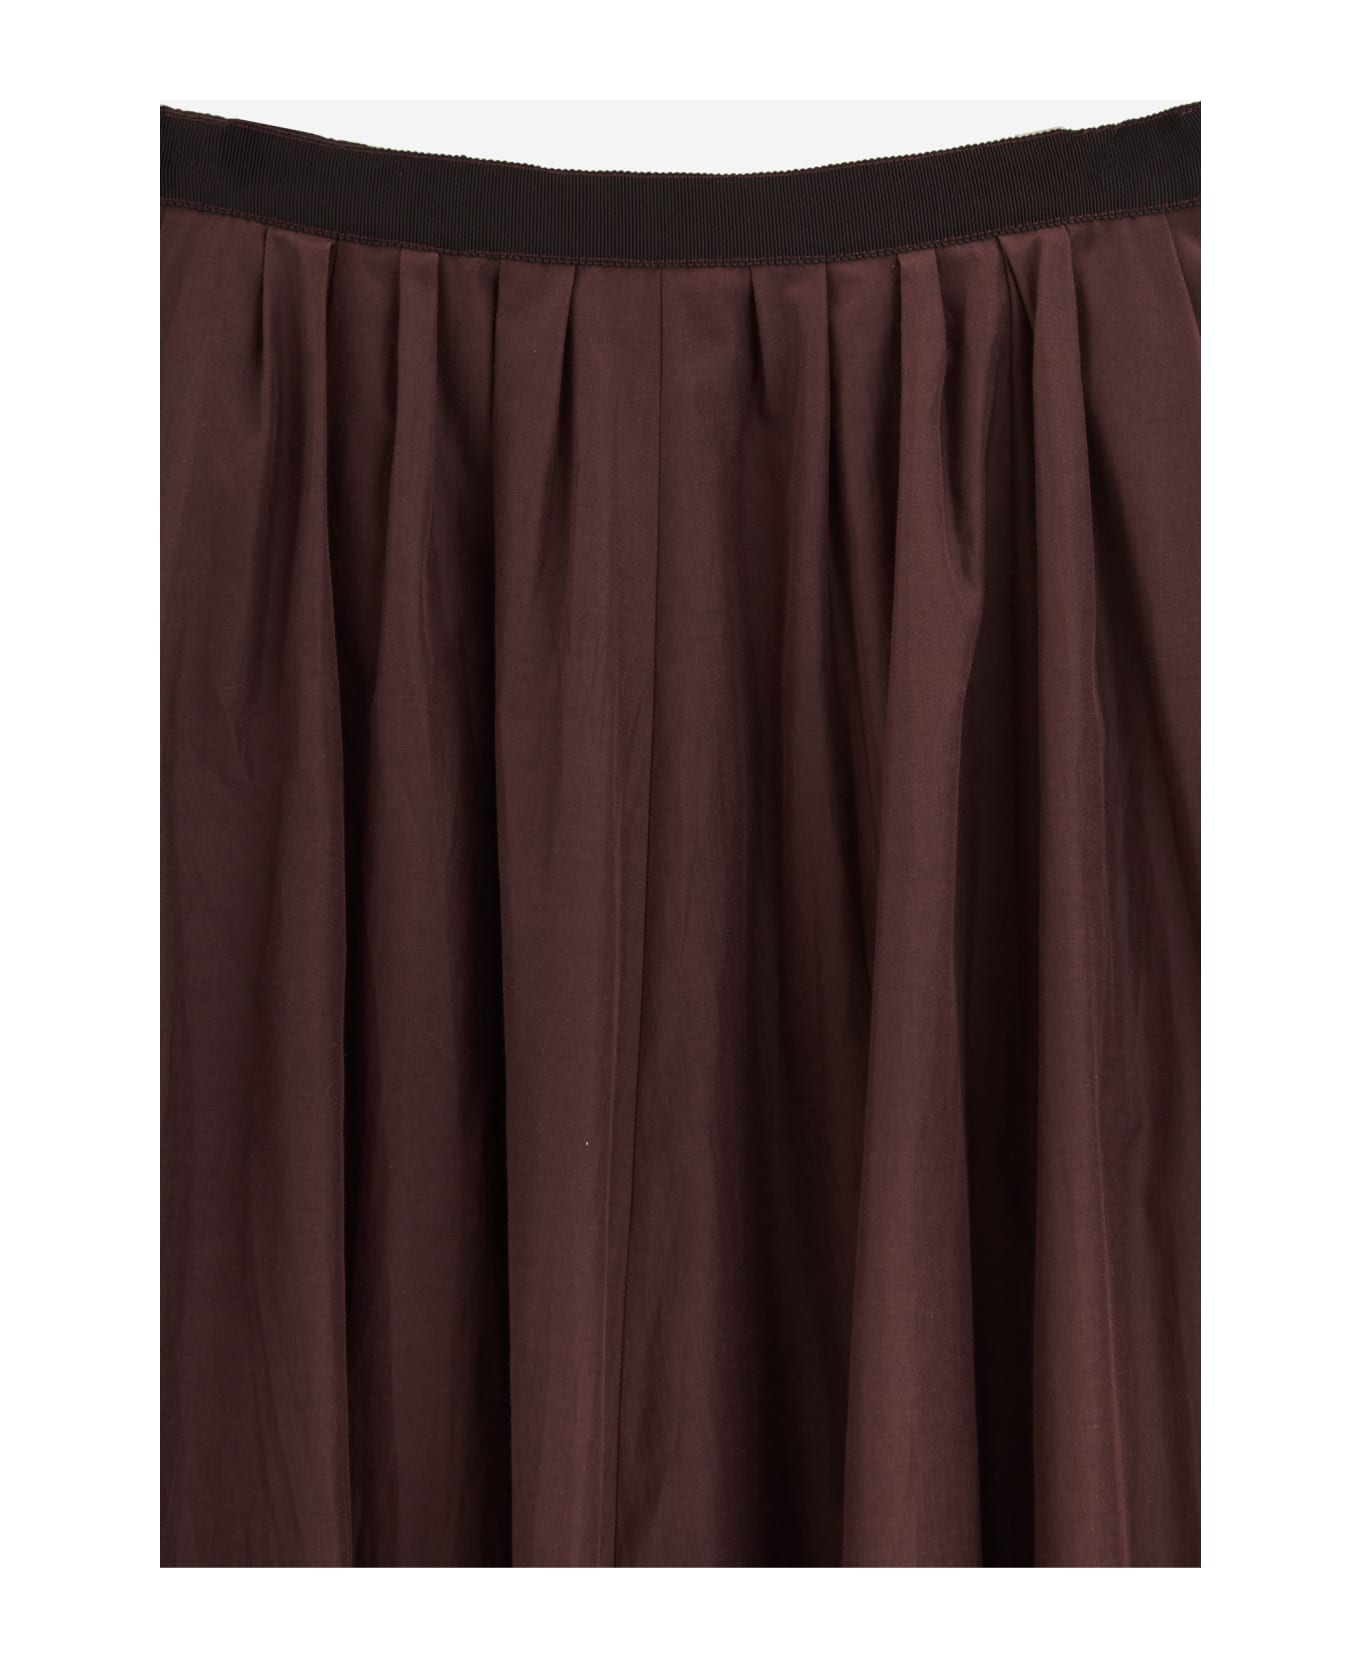 Forte_Forte Skirt - brown スカート